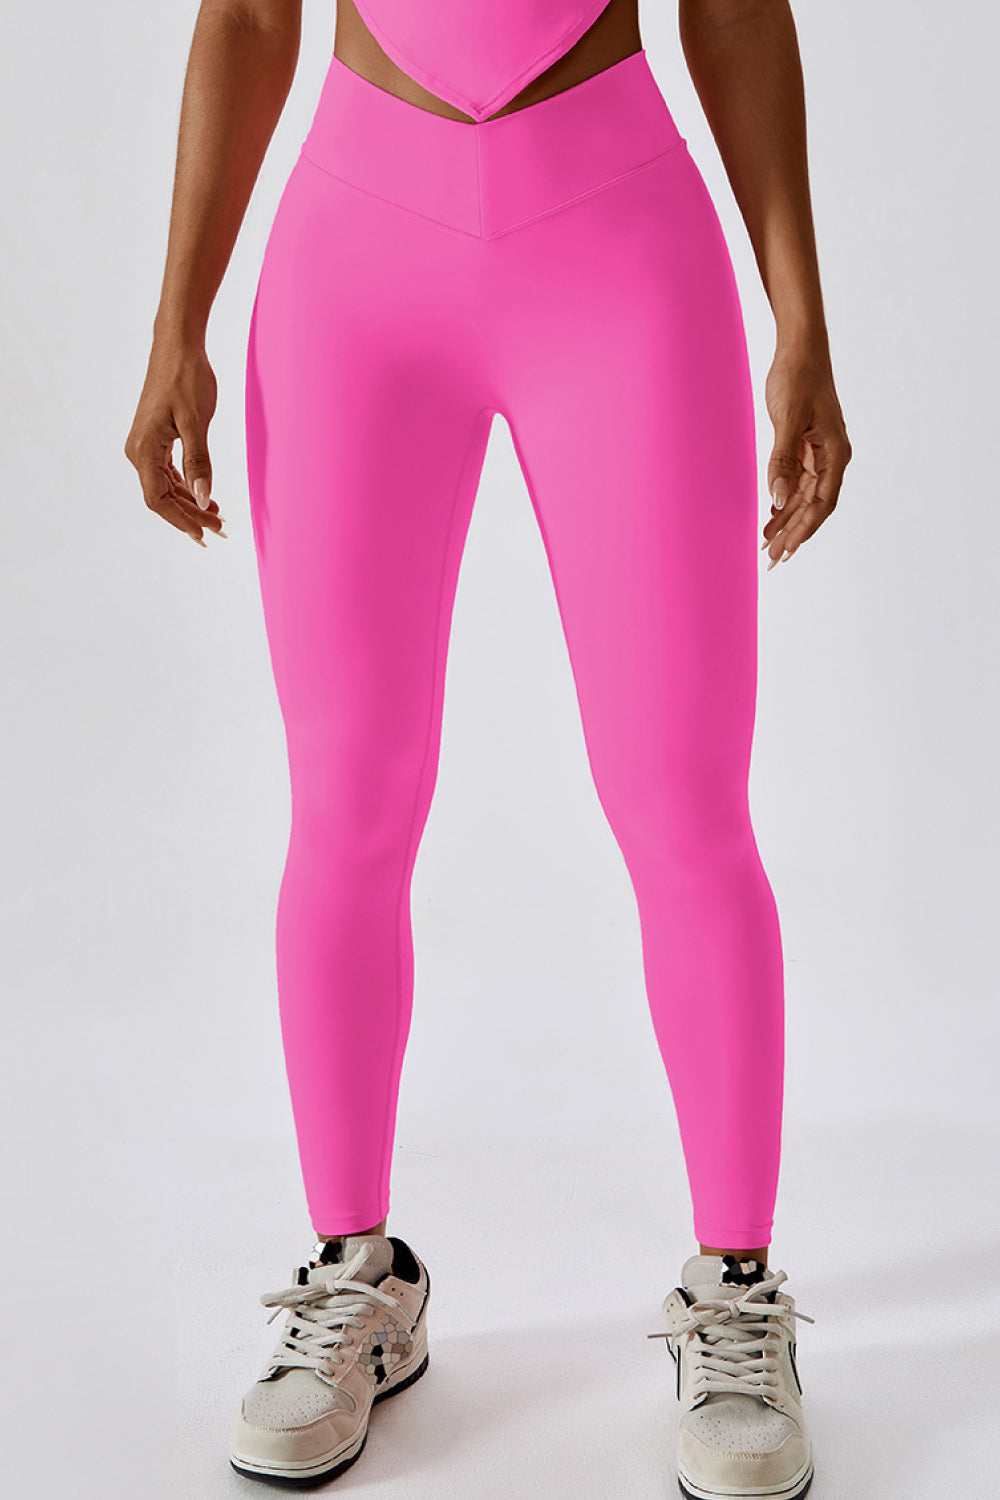 Scrunch Butt Legging for Gym, Yoga or Loungewear - Carnation Pink 